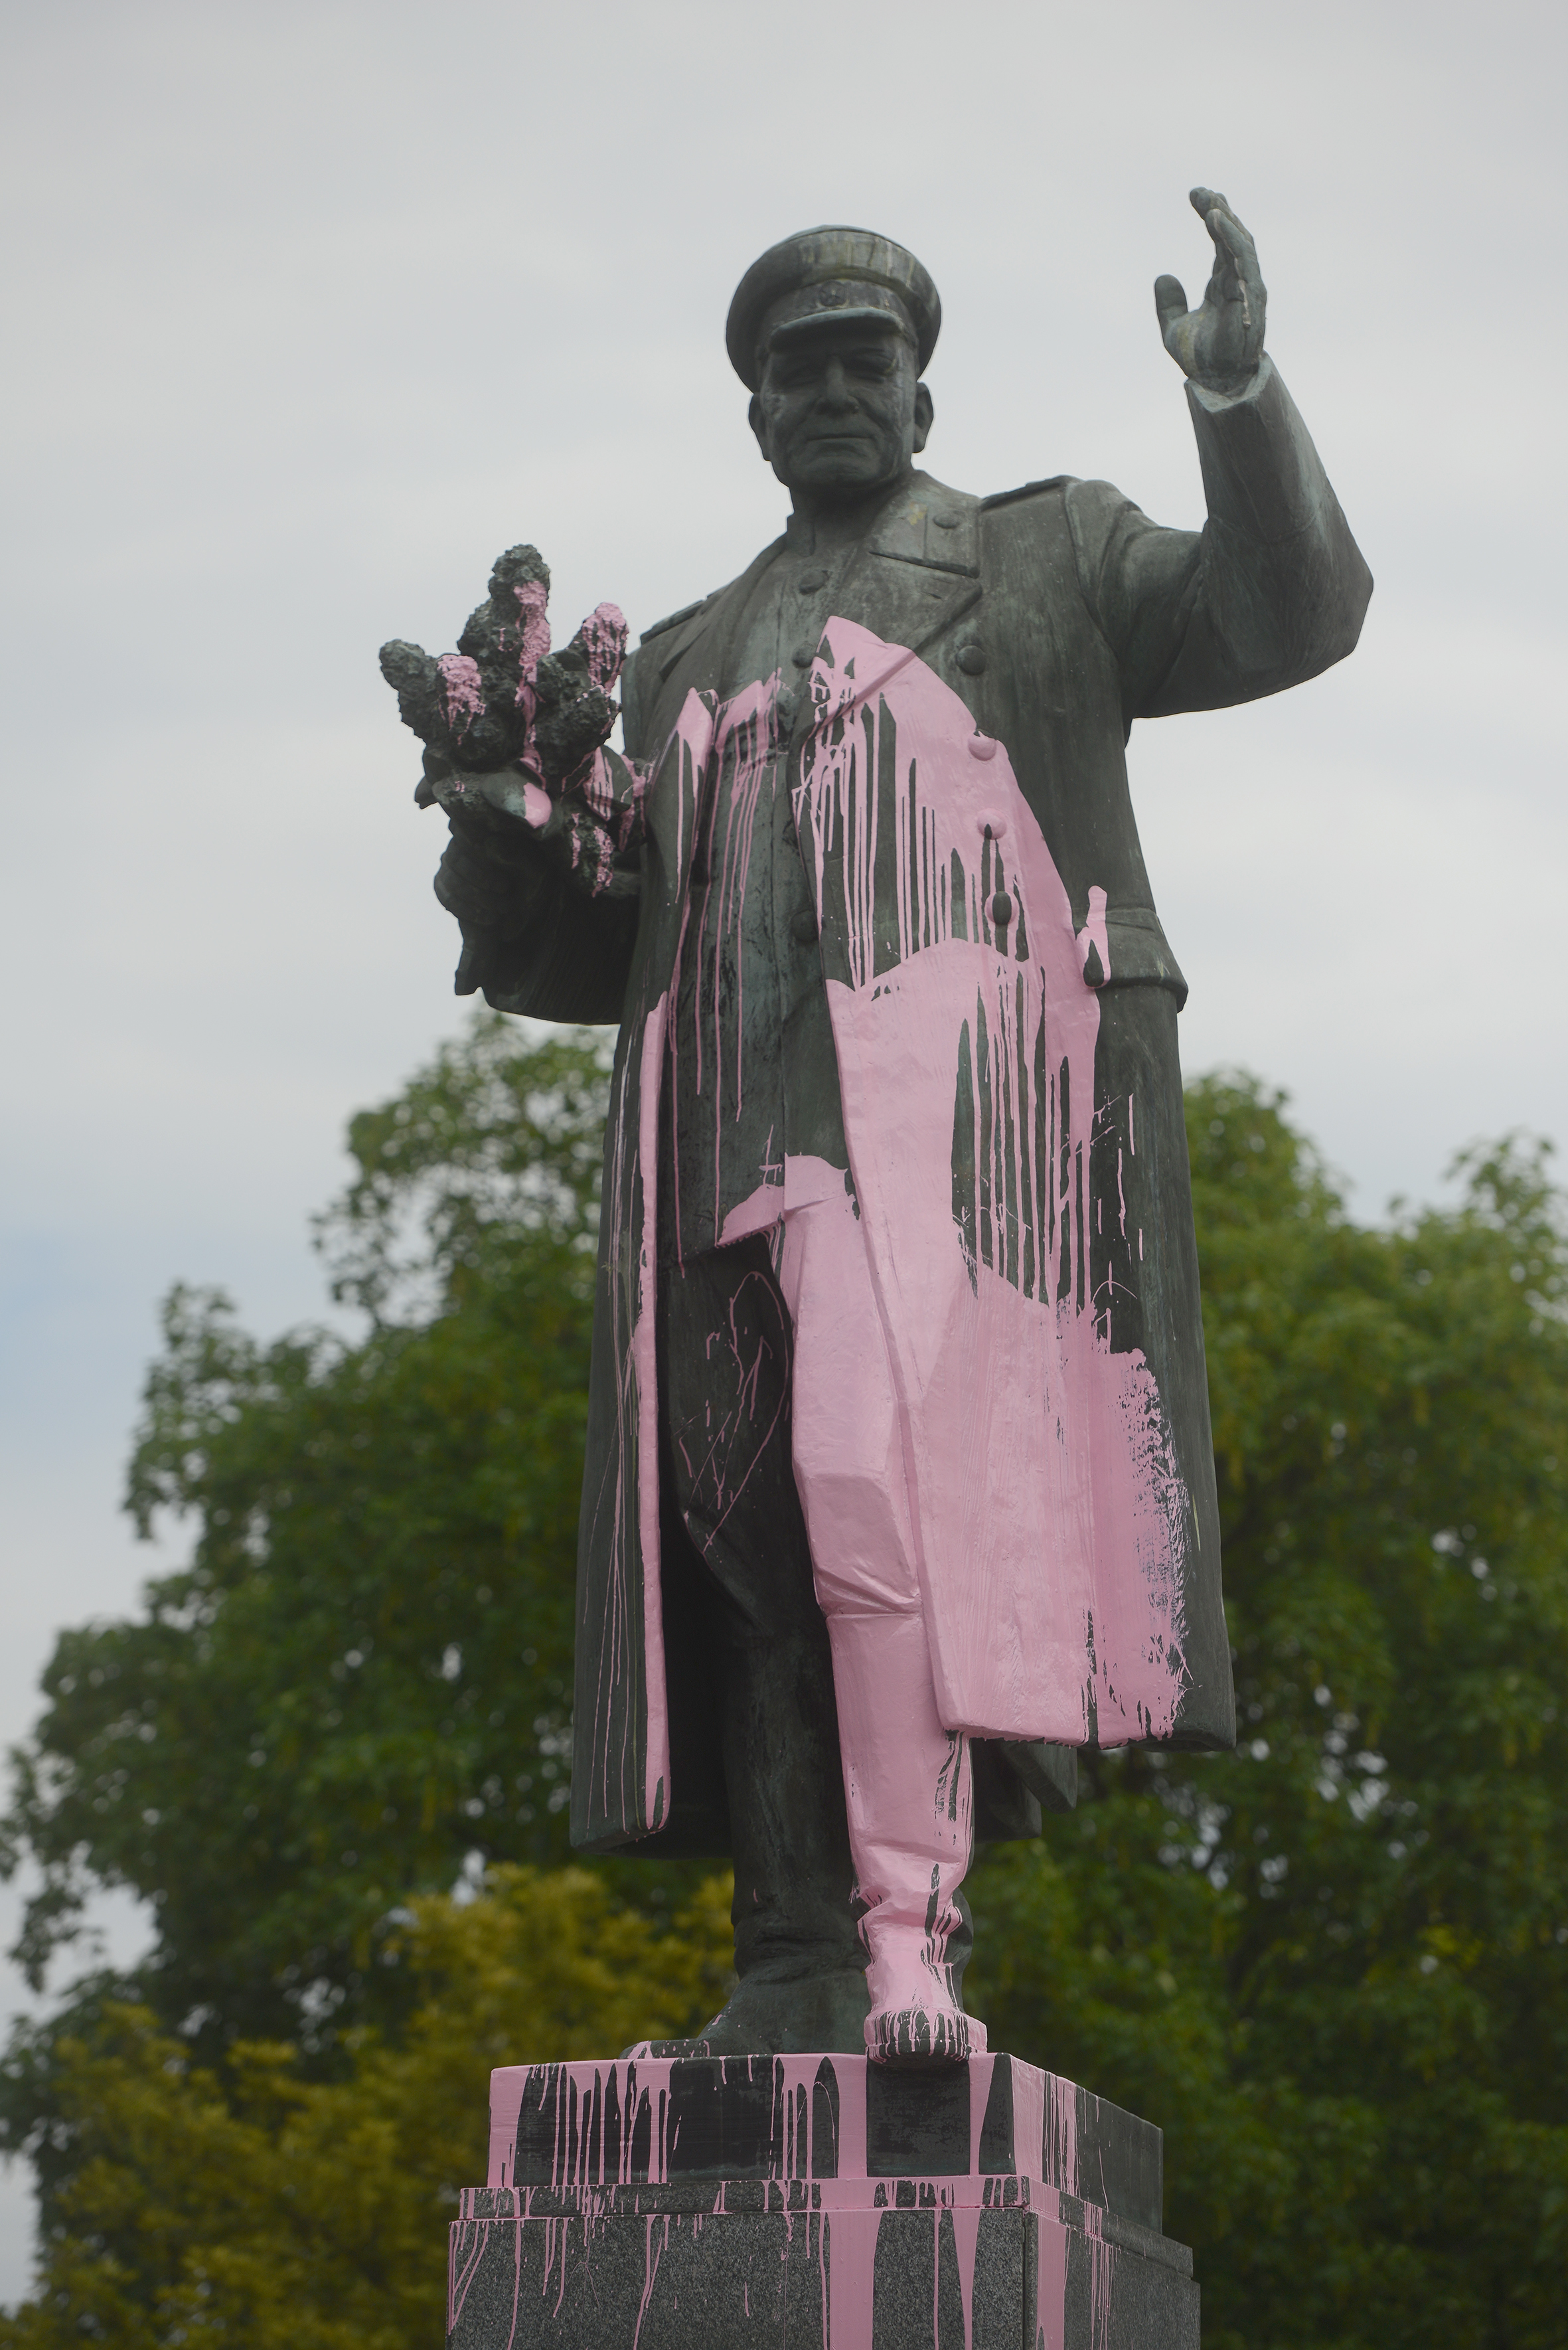 Friss emlék a prágai tavasz 40. évfordulójára: május 7-én, hétfőn éjjel rózsaszín festékkel öntötték le a második világháborús szovjet parancsnok szobrát Prágában.